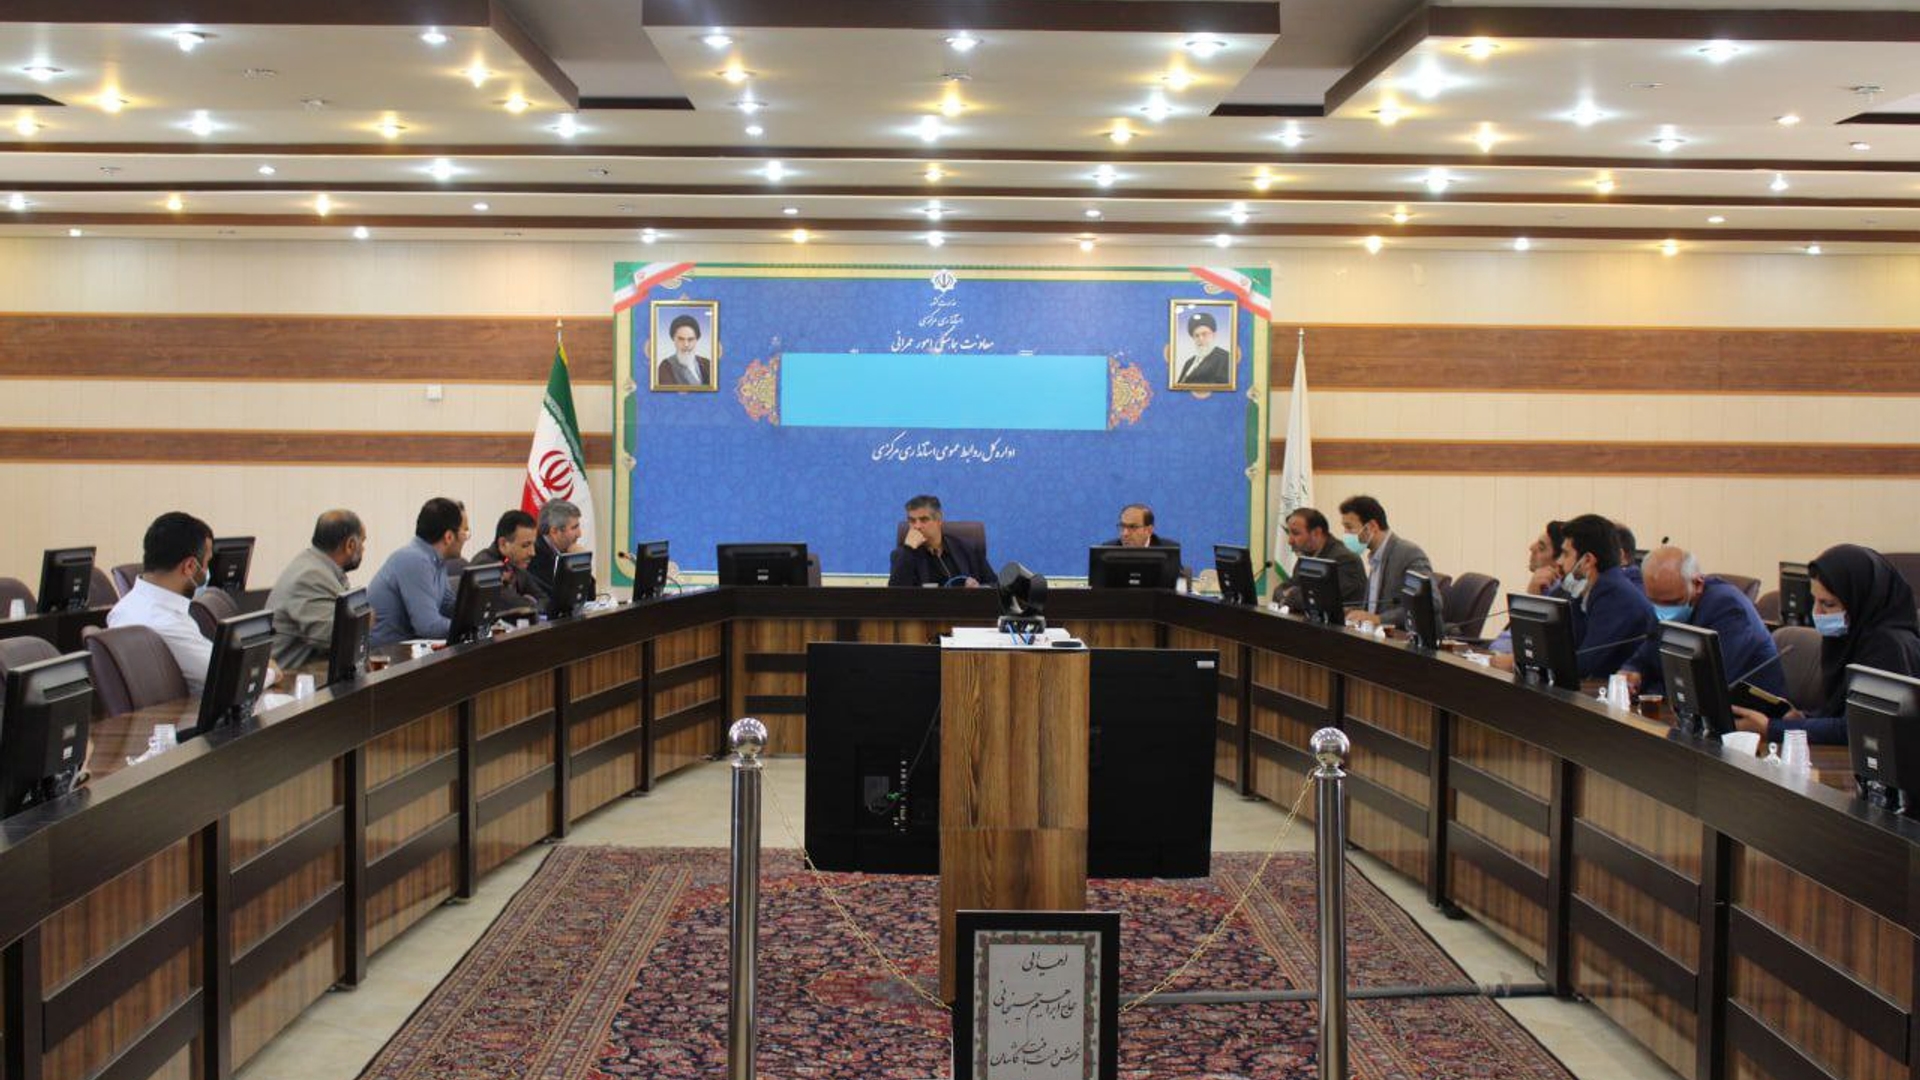 جلسه رفع موانع اجرایی پروژه ۲۶۴ واحدی سفیر بنیاد شهید اراک برگزار گردید.